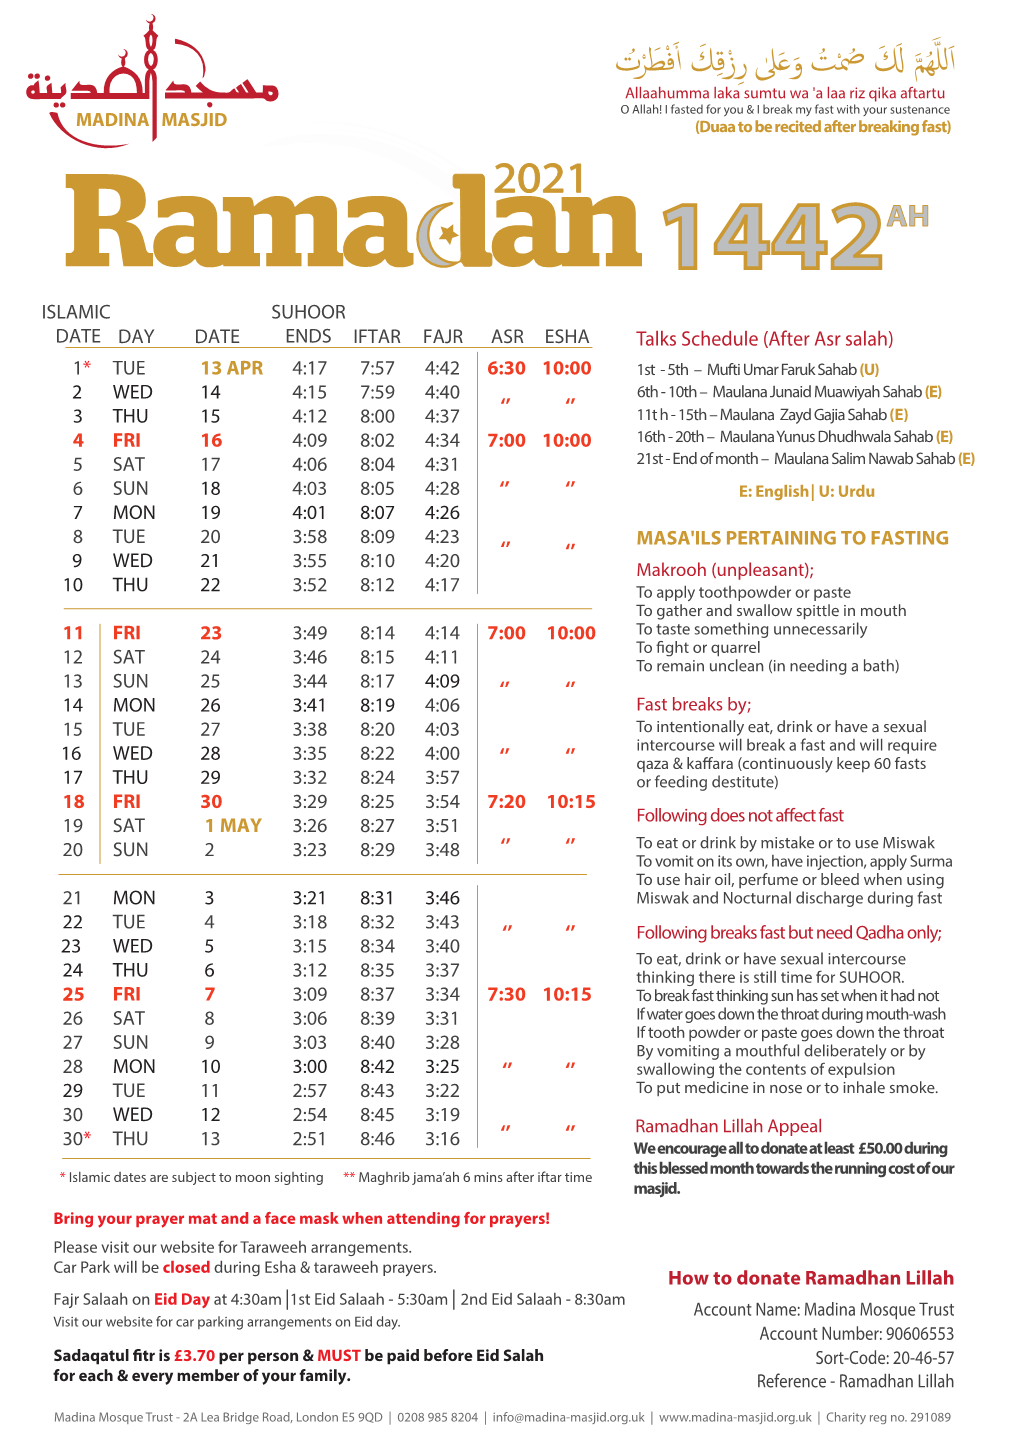 MMT Ramadan Calendar 2021 (Online Version)